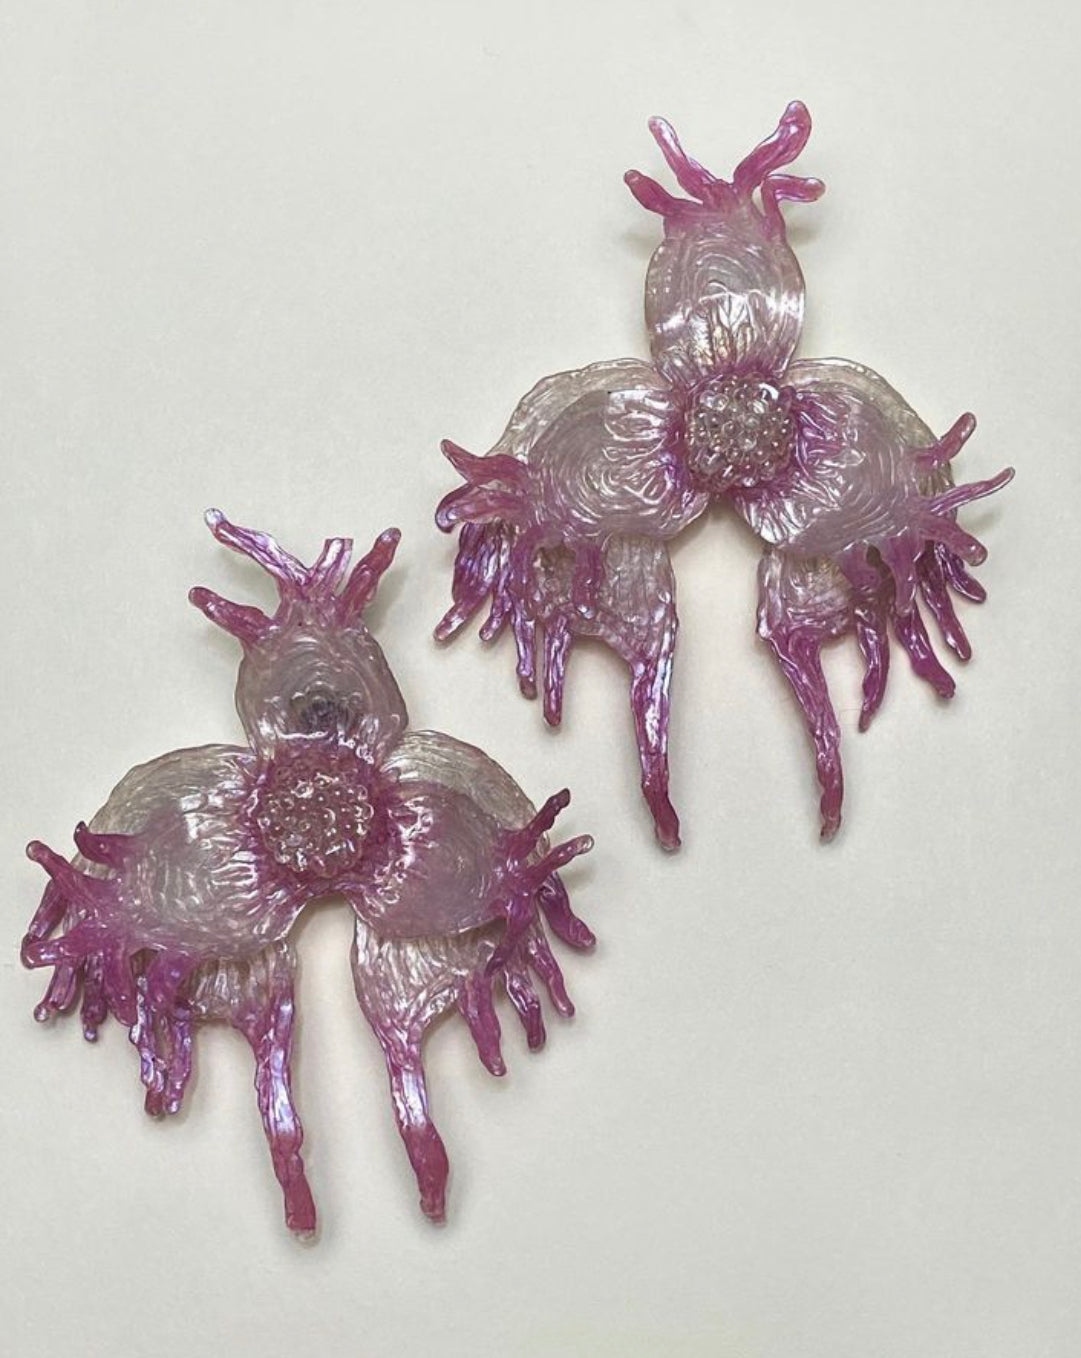 Edwin Ramirez - “Marine Orchid” earrings